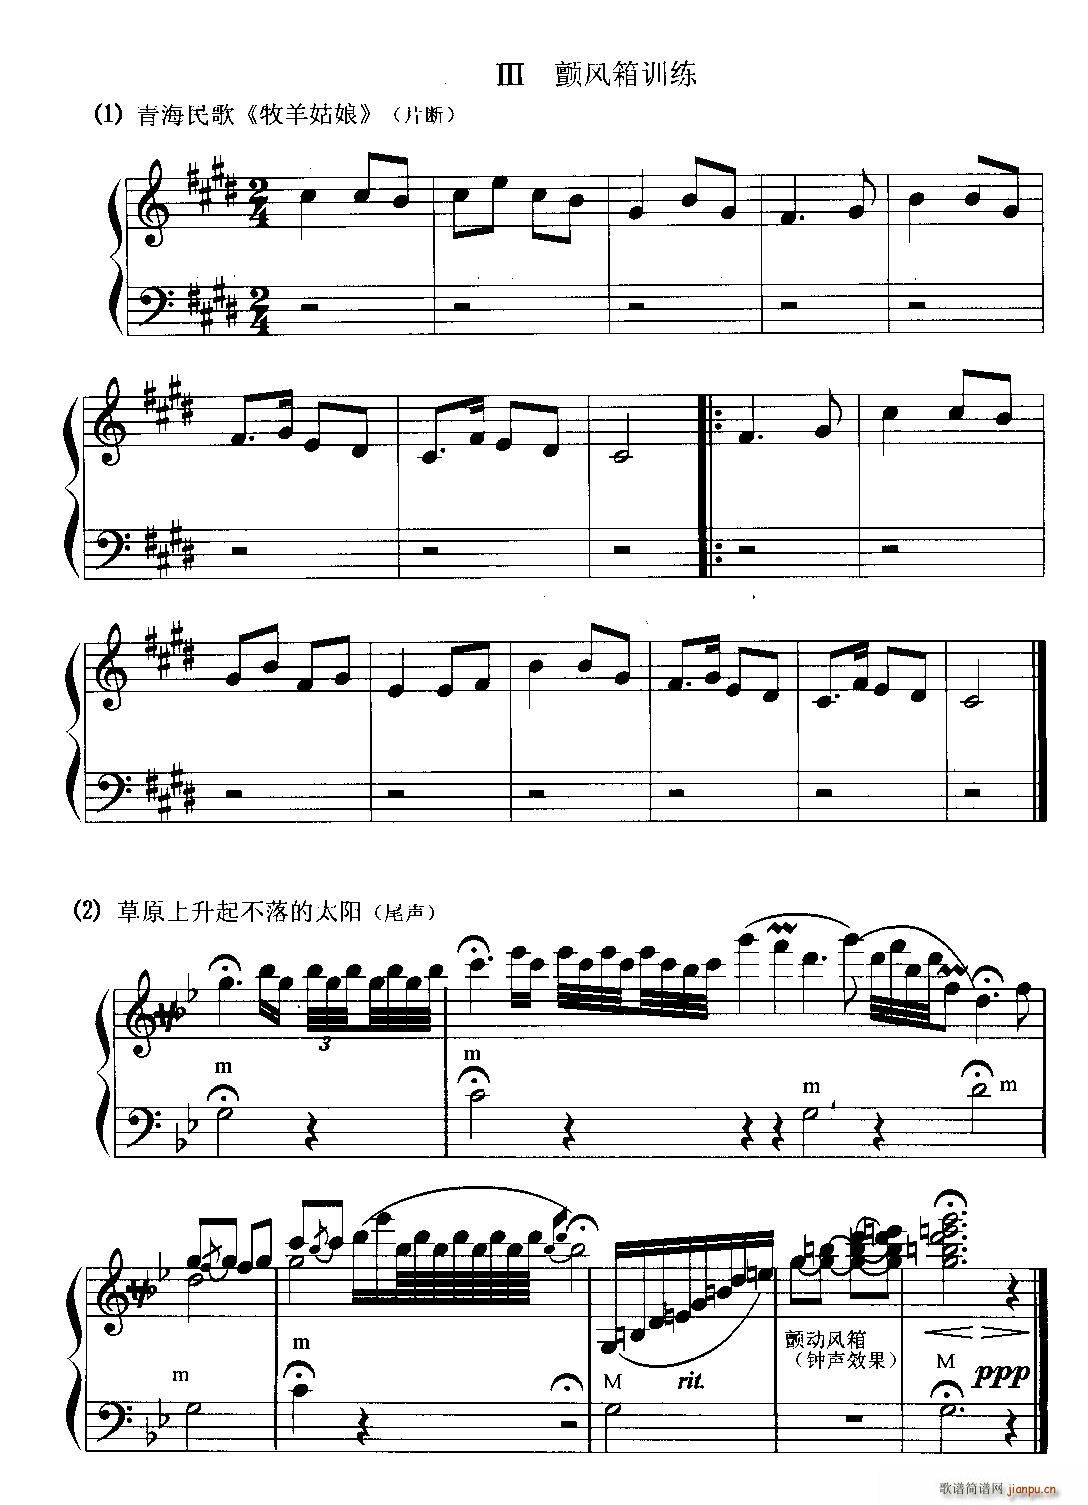 手风琴颤风箱训练(手风琴谱)1